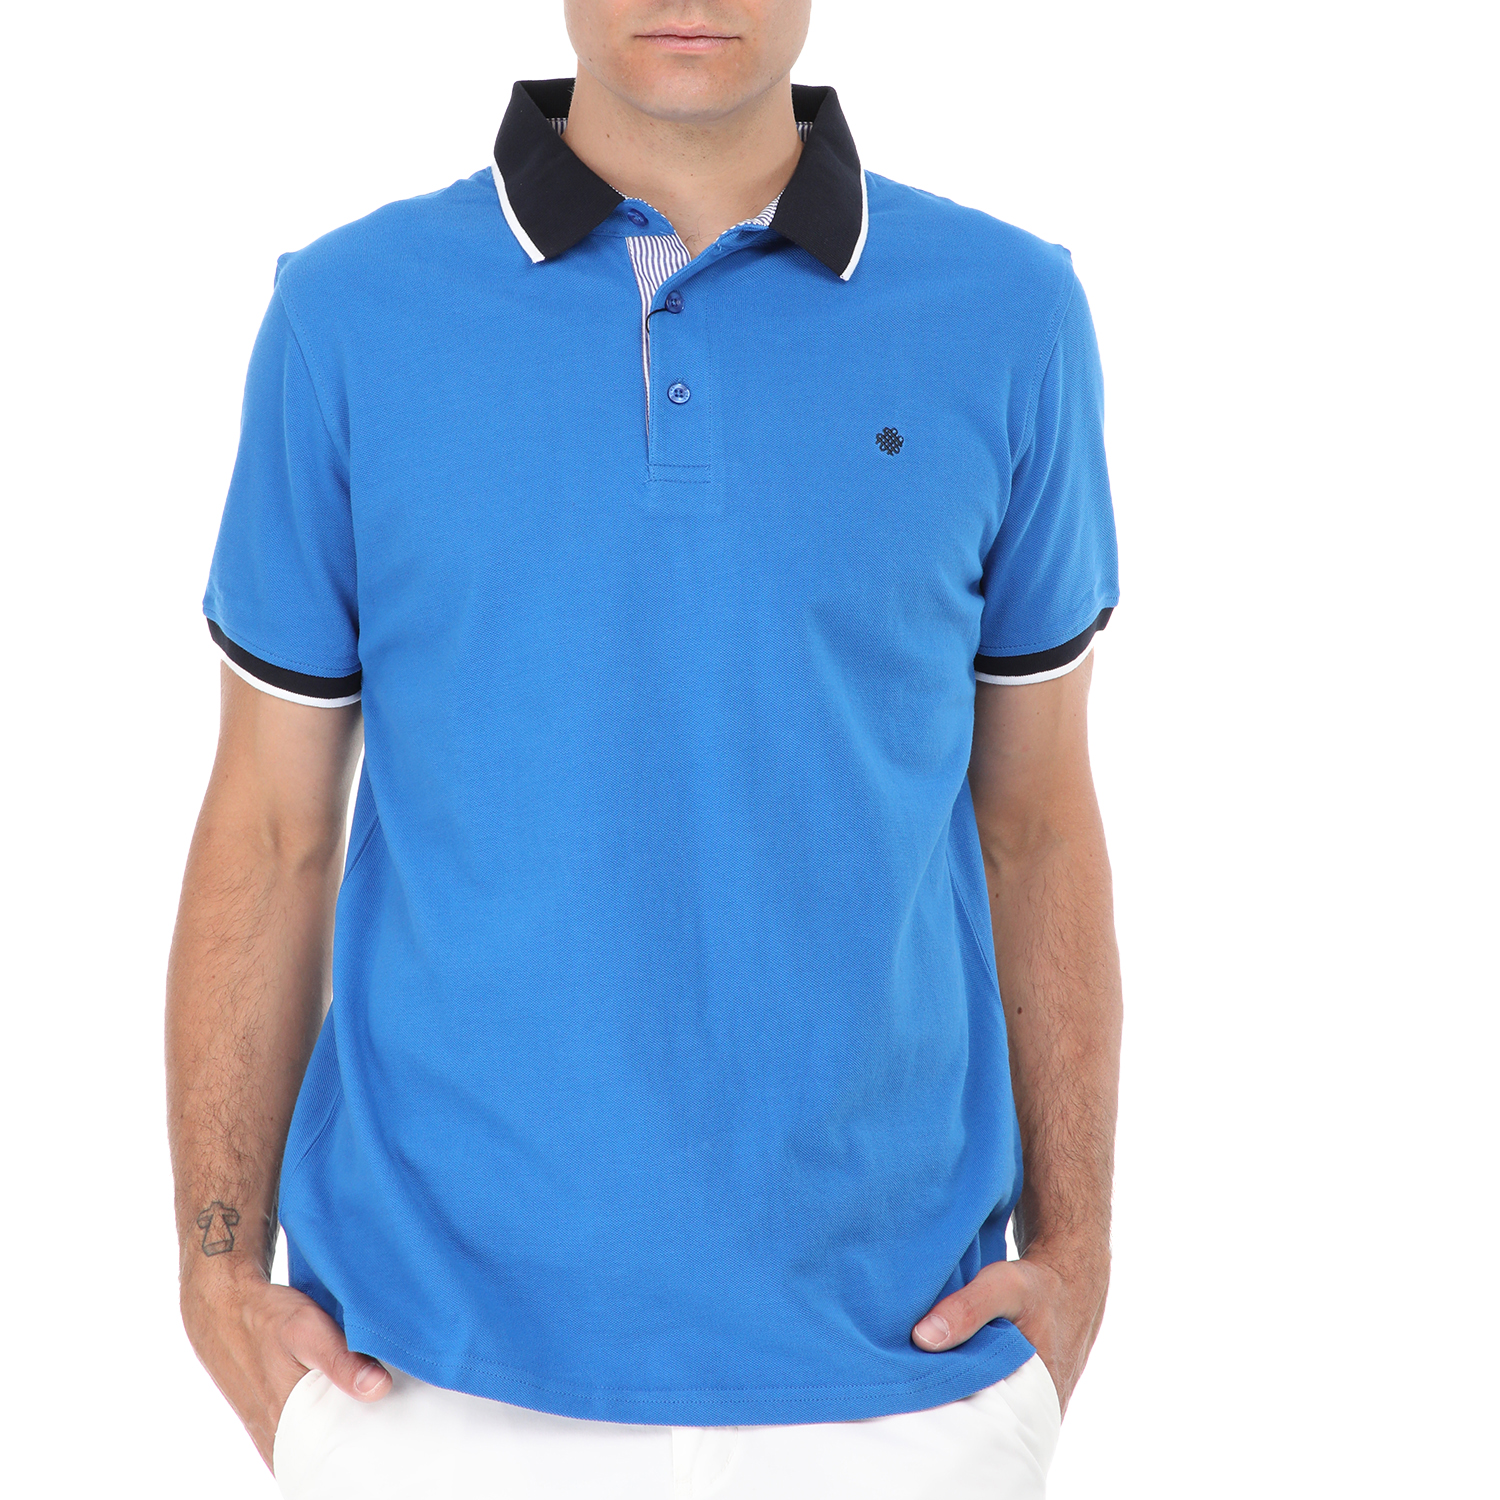 Ανδρικά/Ρούχα/Μπλούζες/Πόλο DORS - Ανδρική polo μπλούζα DORS μπλε